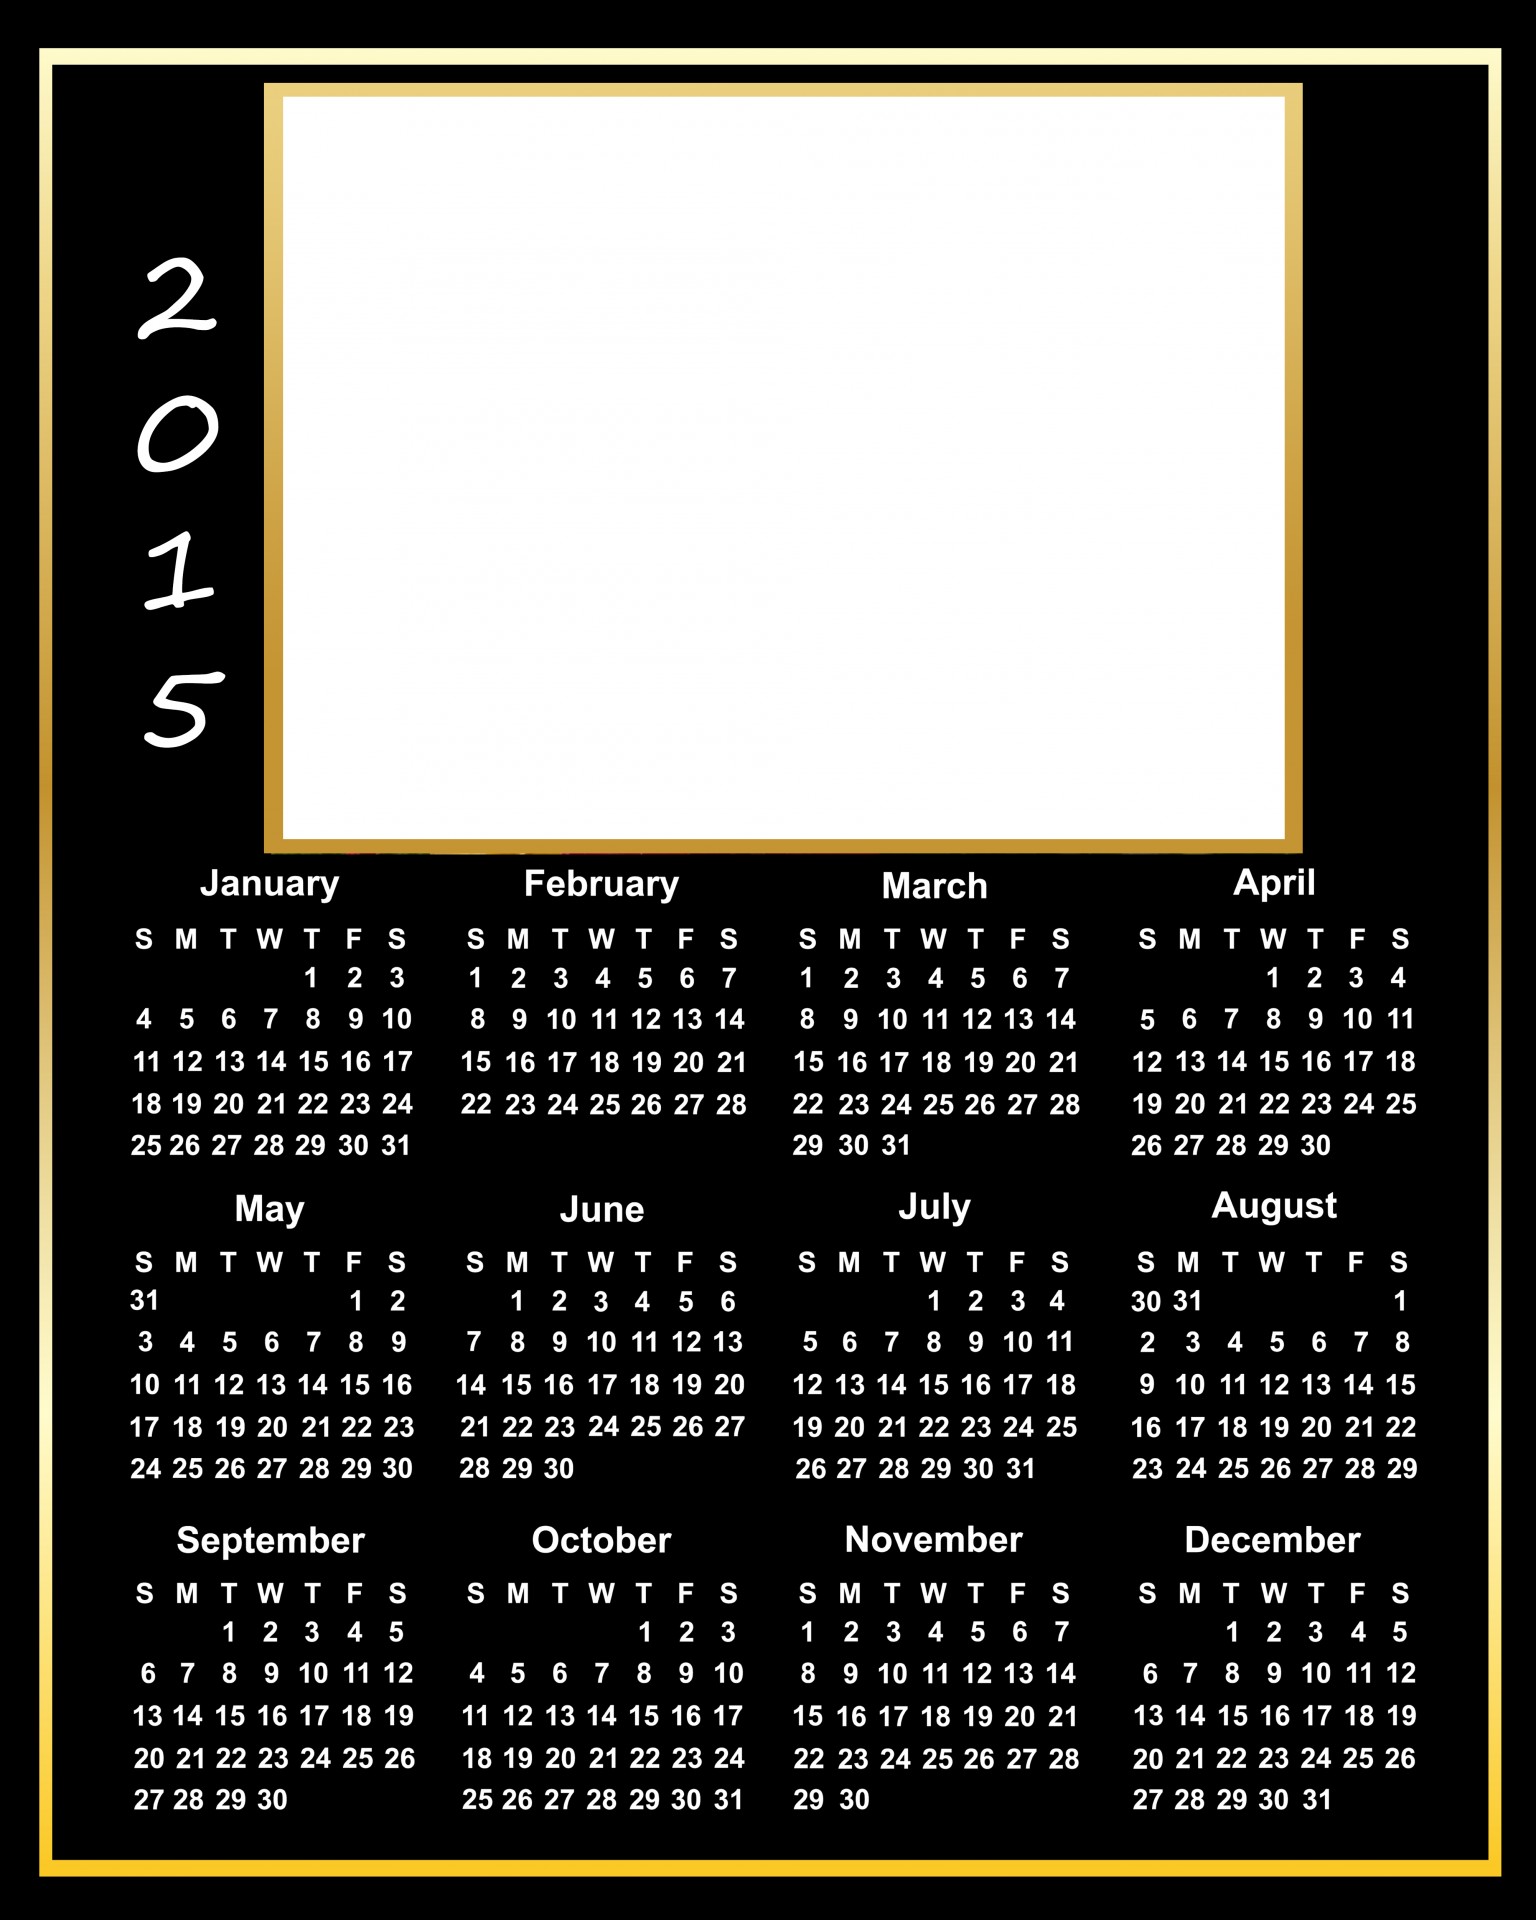 2015 calendar 2105 calendar free photo